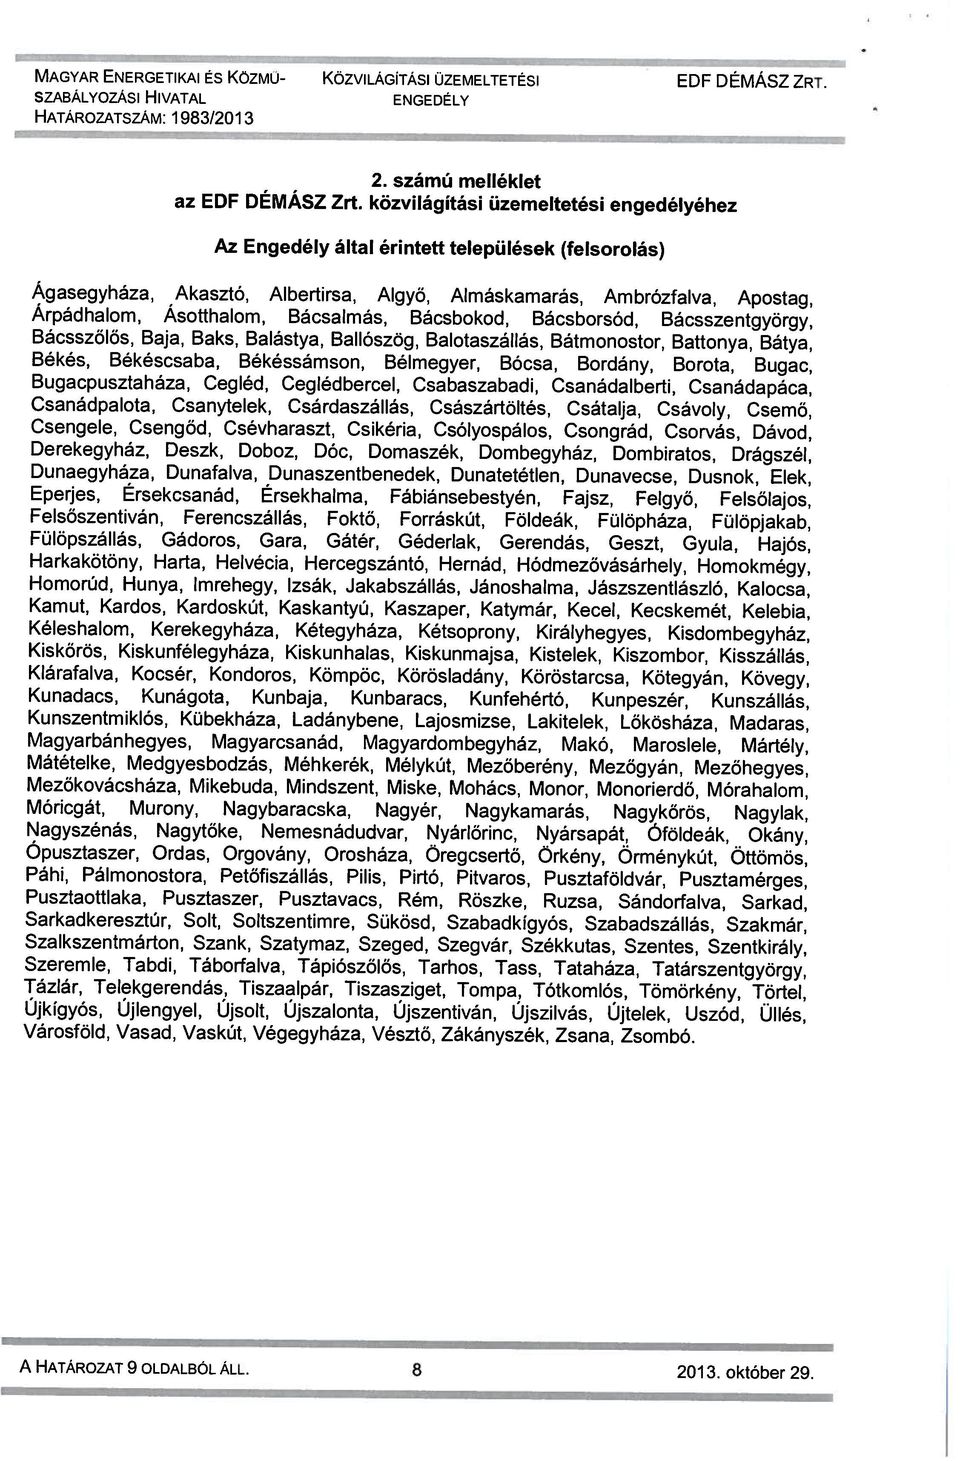 Algyő, Almáskamarás, Ambrózfalva, Apostag, Az Engedély által érintett települések (felsorolás) 2. számú melléklet A HATÁROZAT 9 OLDALBÓL ÁLL. 8 2013. október 29.